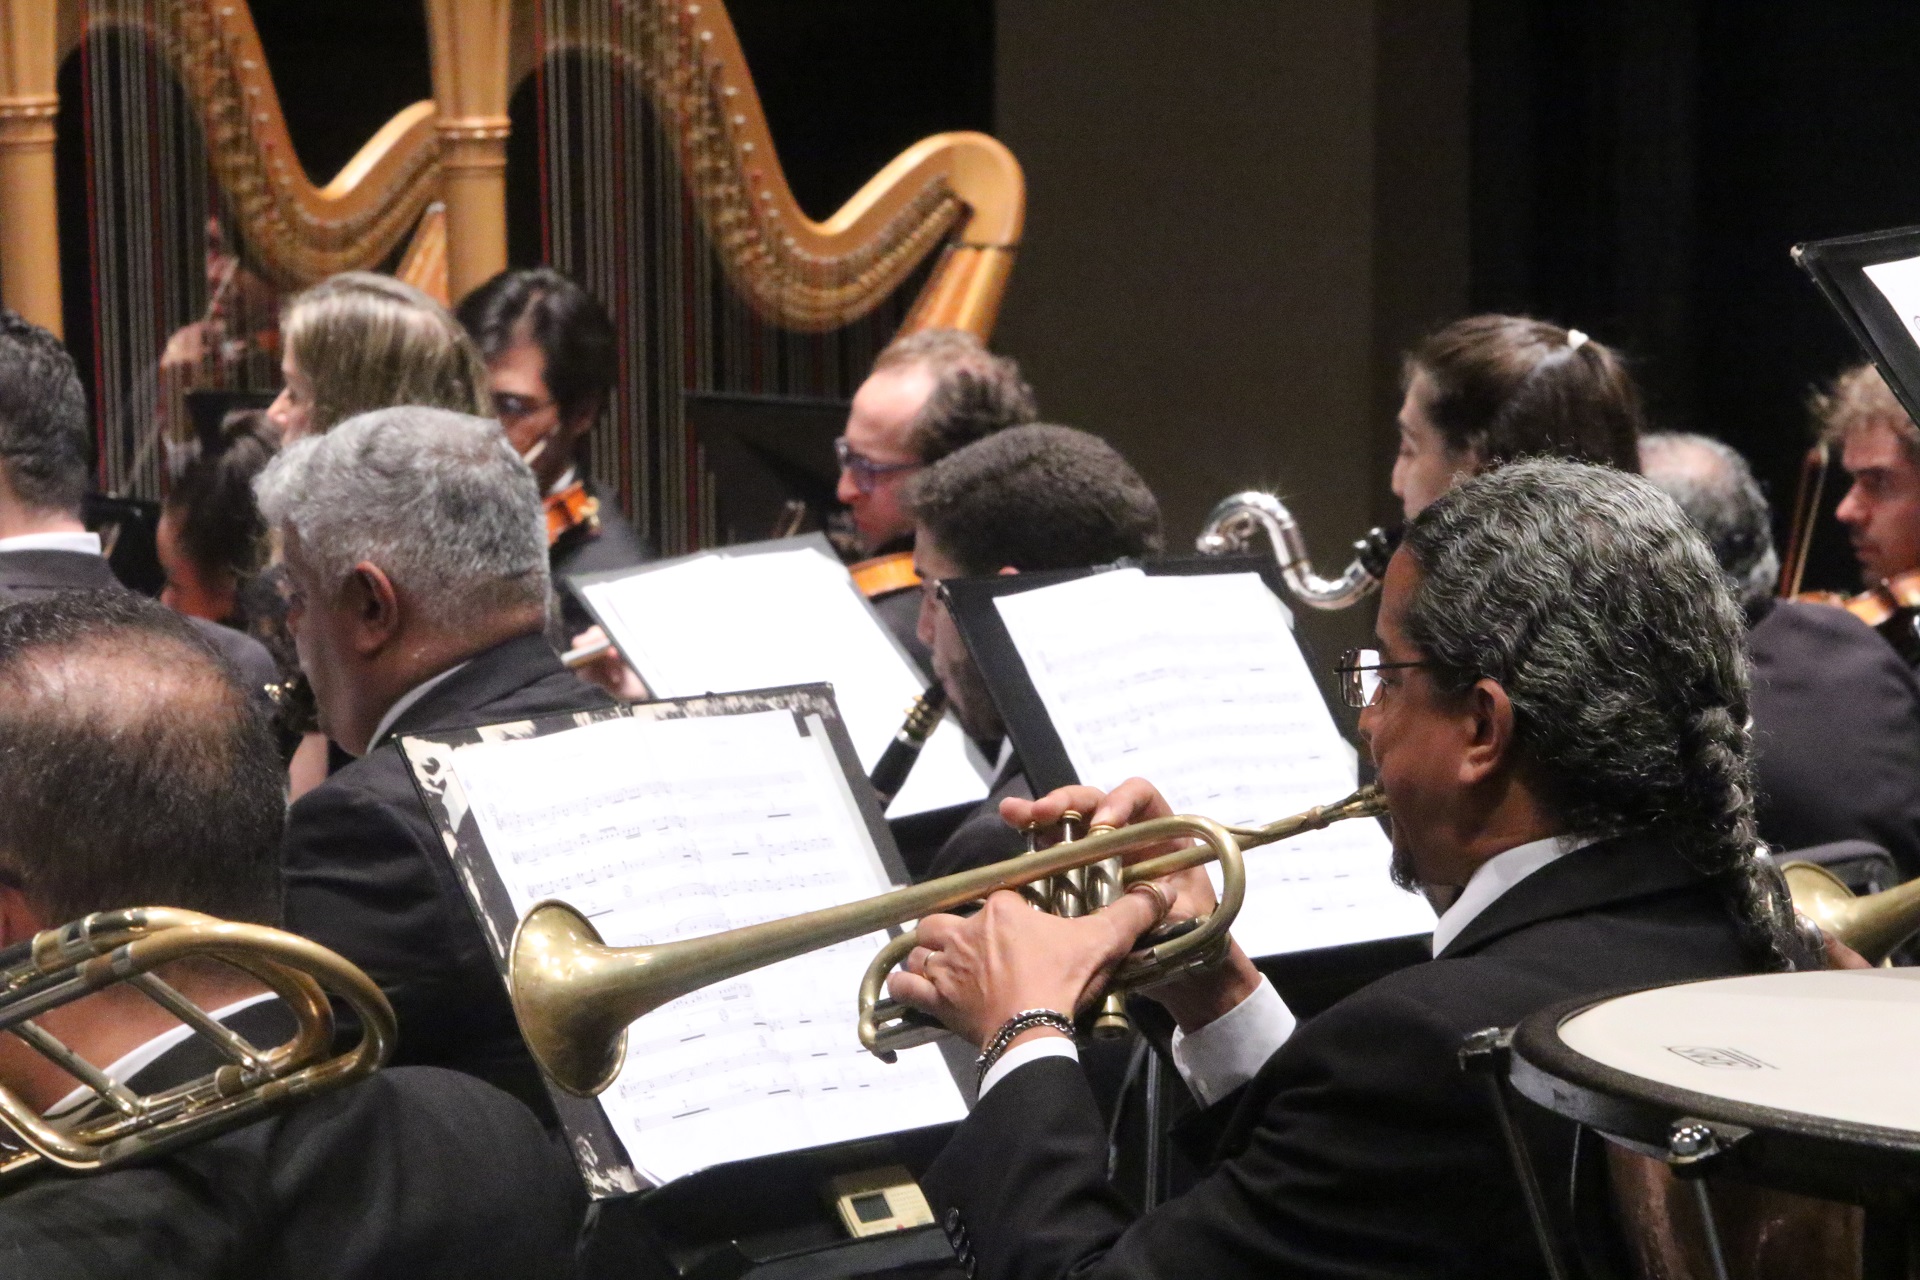 Orquestra Sinfônica de Minas Gerais apresenta o concerto “Convite à Valsa”, sob regência do maestro Roberto Tibiriçá